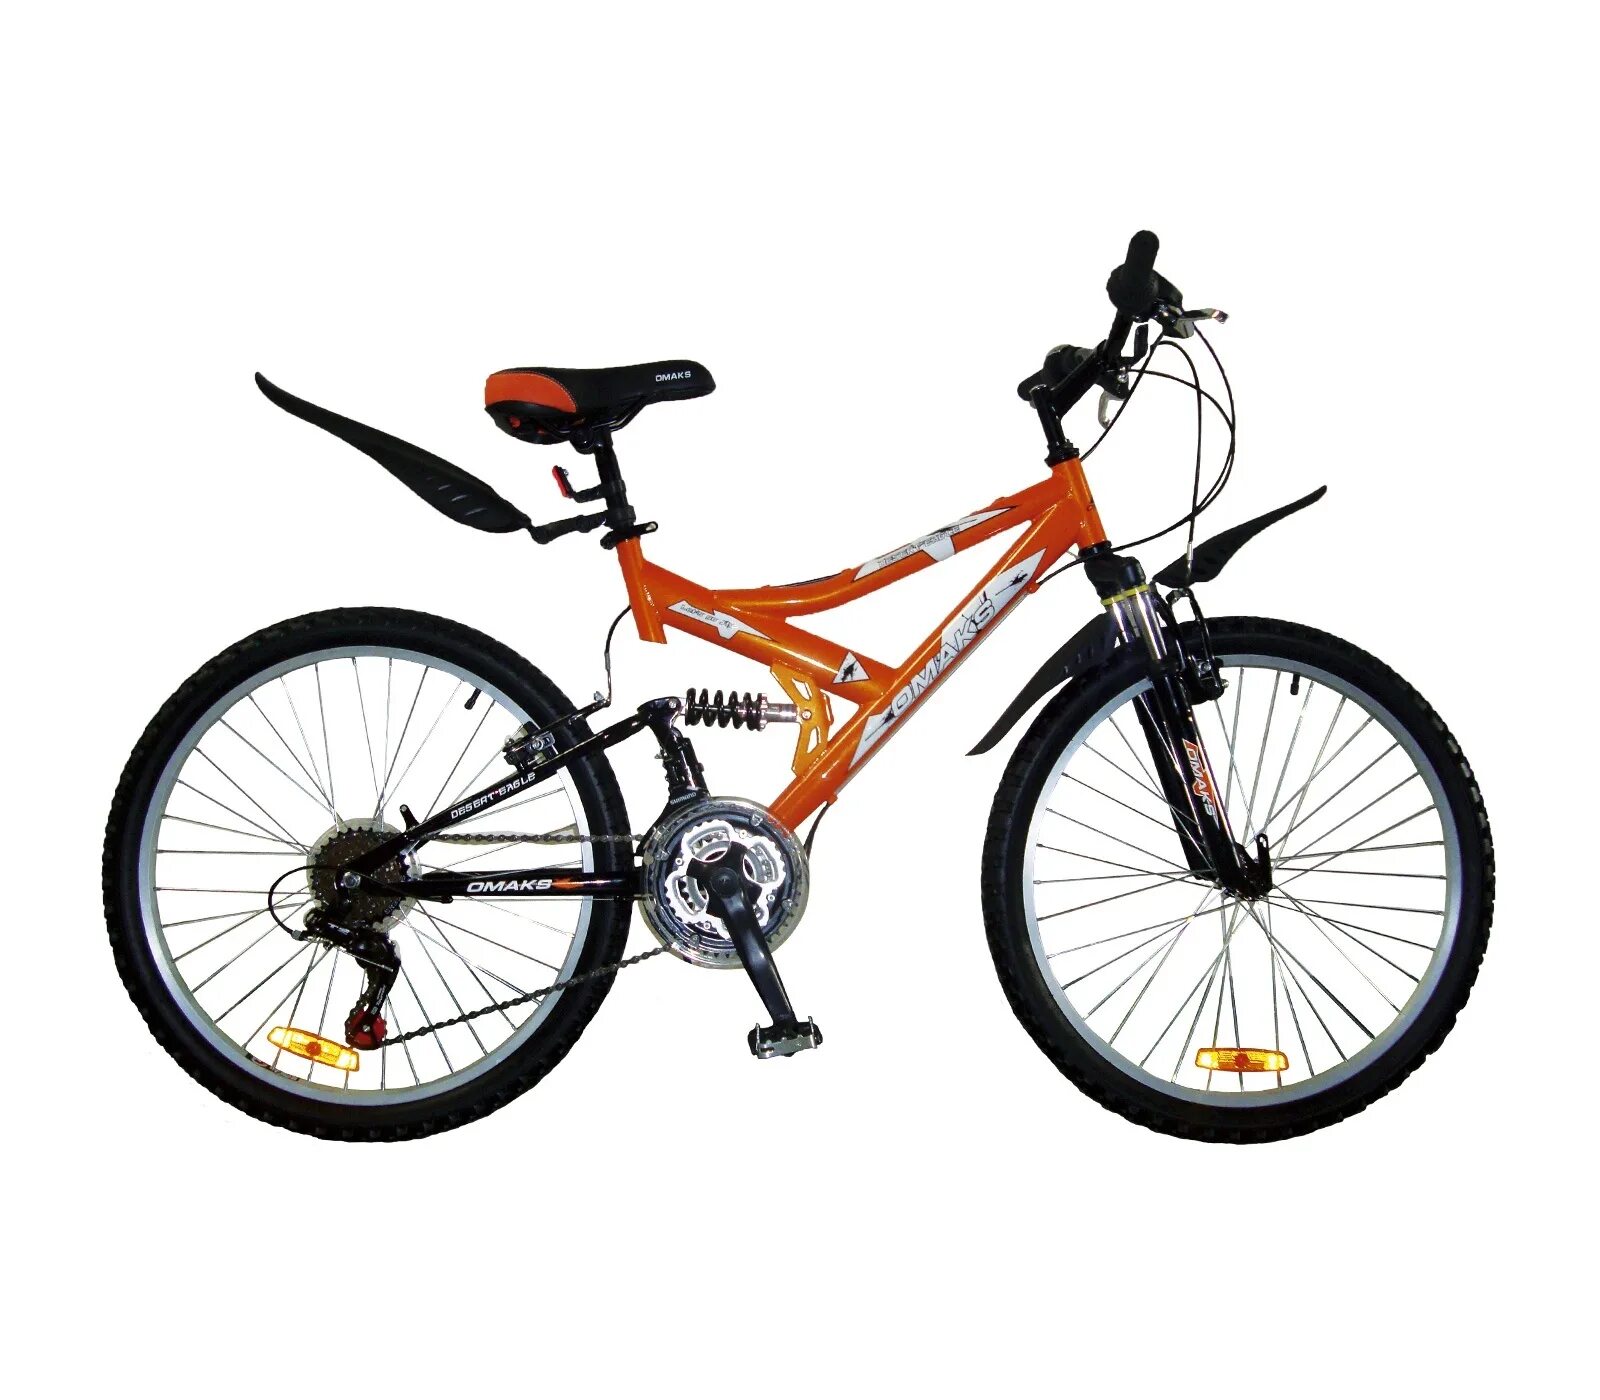 Где можно купить большие велики. Стелс скоростной оранжевый. Велосипед стелс оранжевый скоростной. Велосипед.скоростной стелс 24 скорости. Велик стелс скоростной оранжевый.